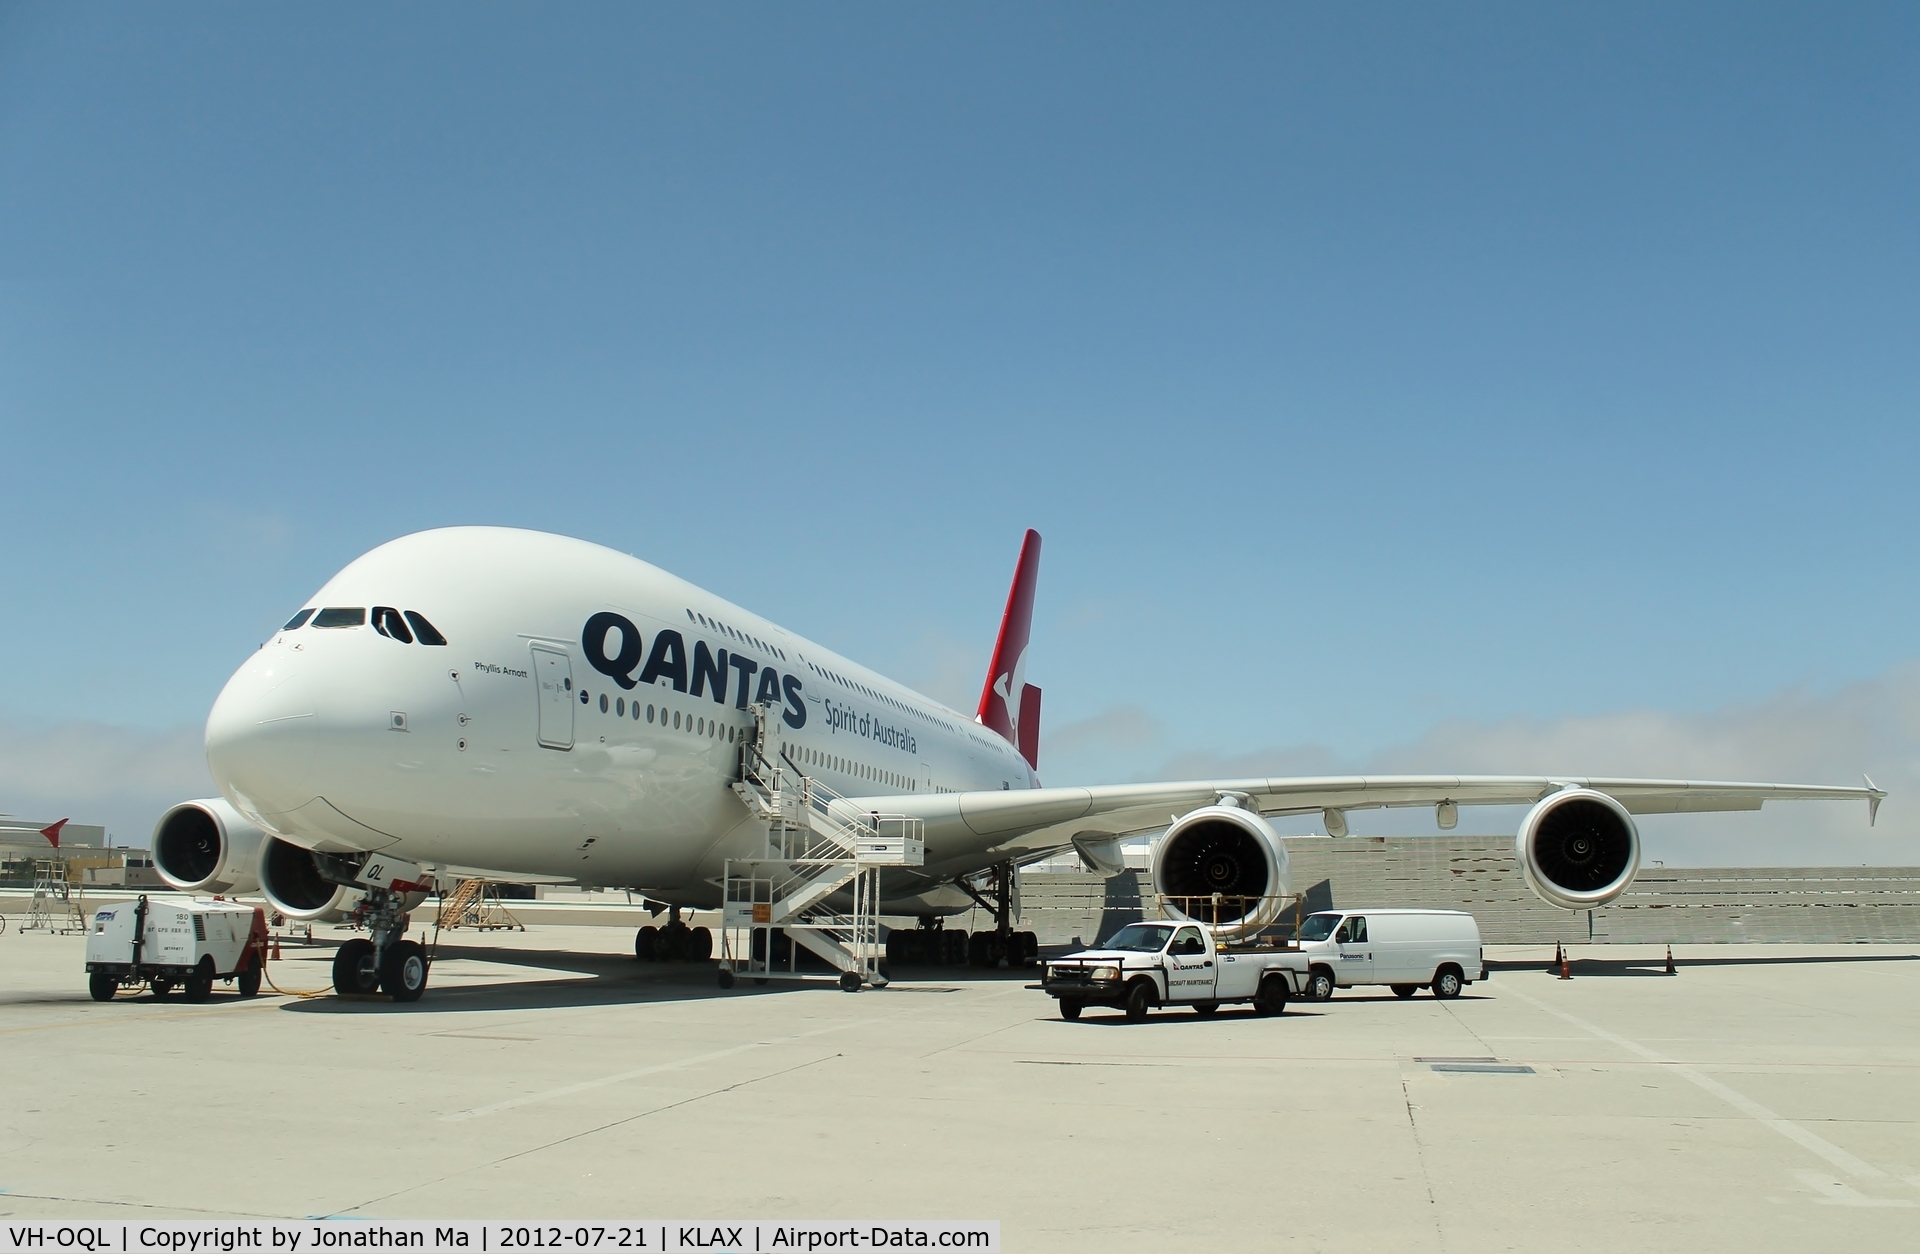 VH-OQL, 2011 Airbus A380-842 C/N 074, Qantas ramp